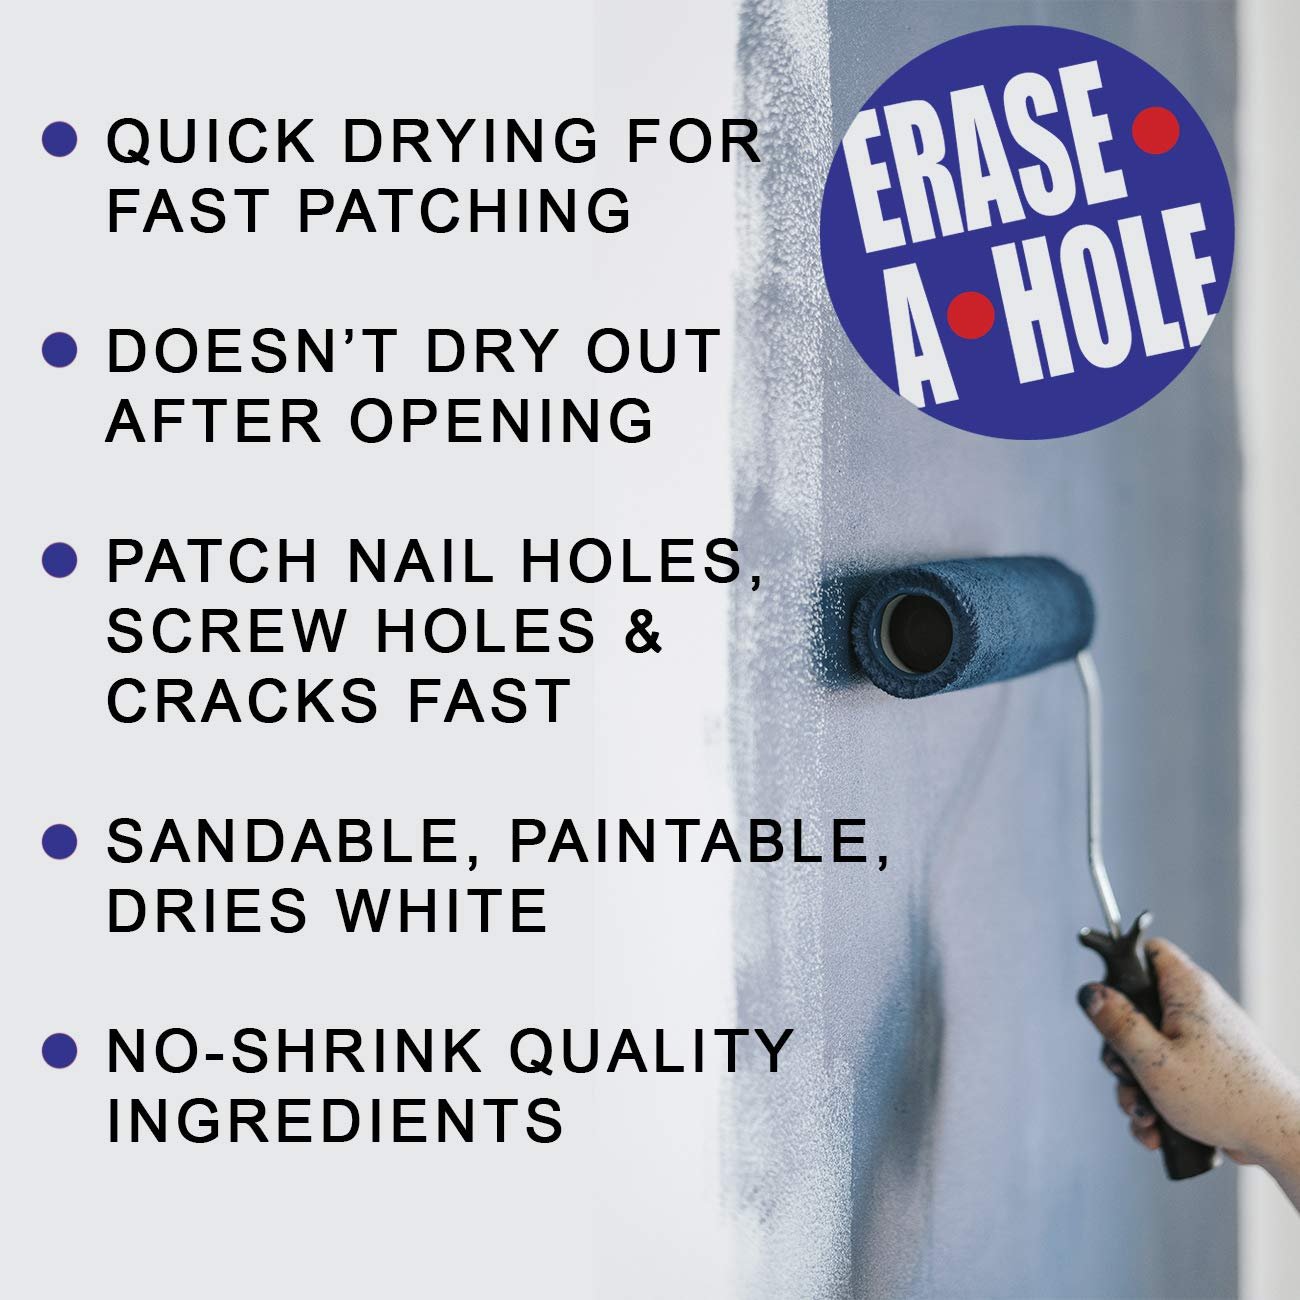 Erase-A-Hole